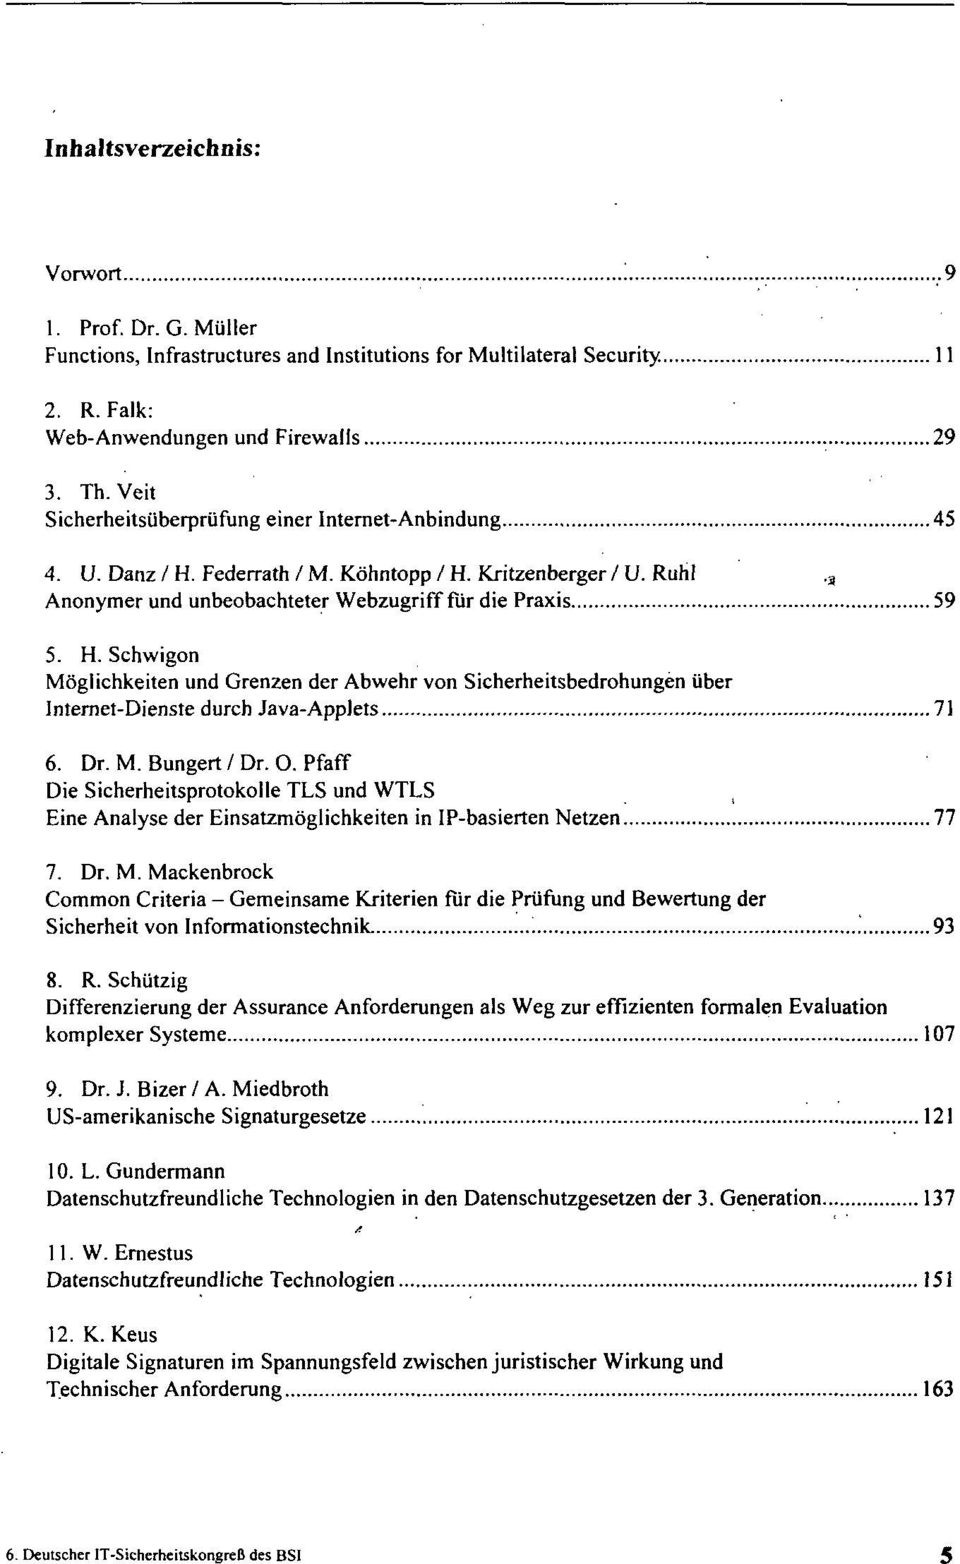 Dr. M. Bungert / Dr. O. Pfaff Die Sicherheitsprotokolle TLS und WTLS Eine Analyse der Einsatzmöglichkeiten in IP-basierten Netzen 77 7. Dr. M. Mackenbrock Common Criteria - Gemeinsame Kriterien für die Prüfung und Bewertung der Sicherheit von Informationstechnik.